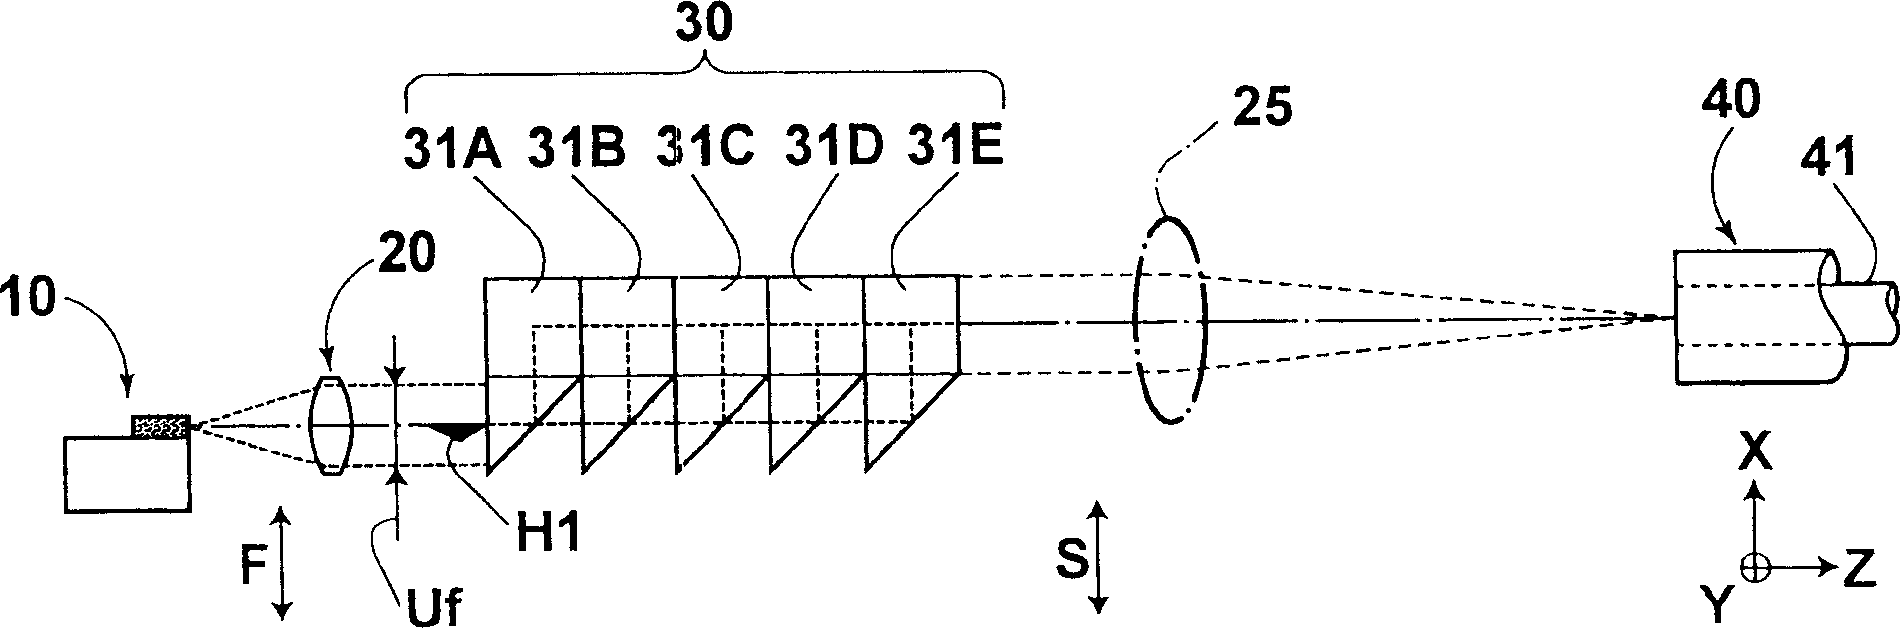 Laser multiplex transmission apparatus